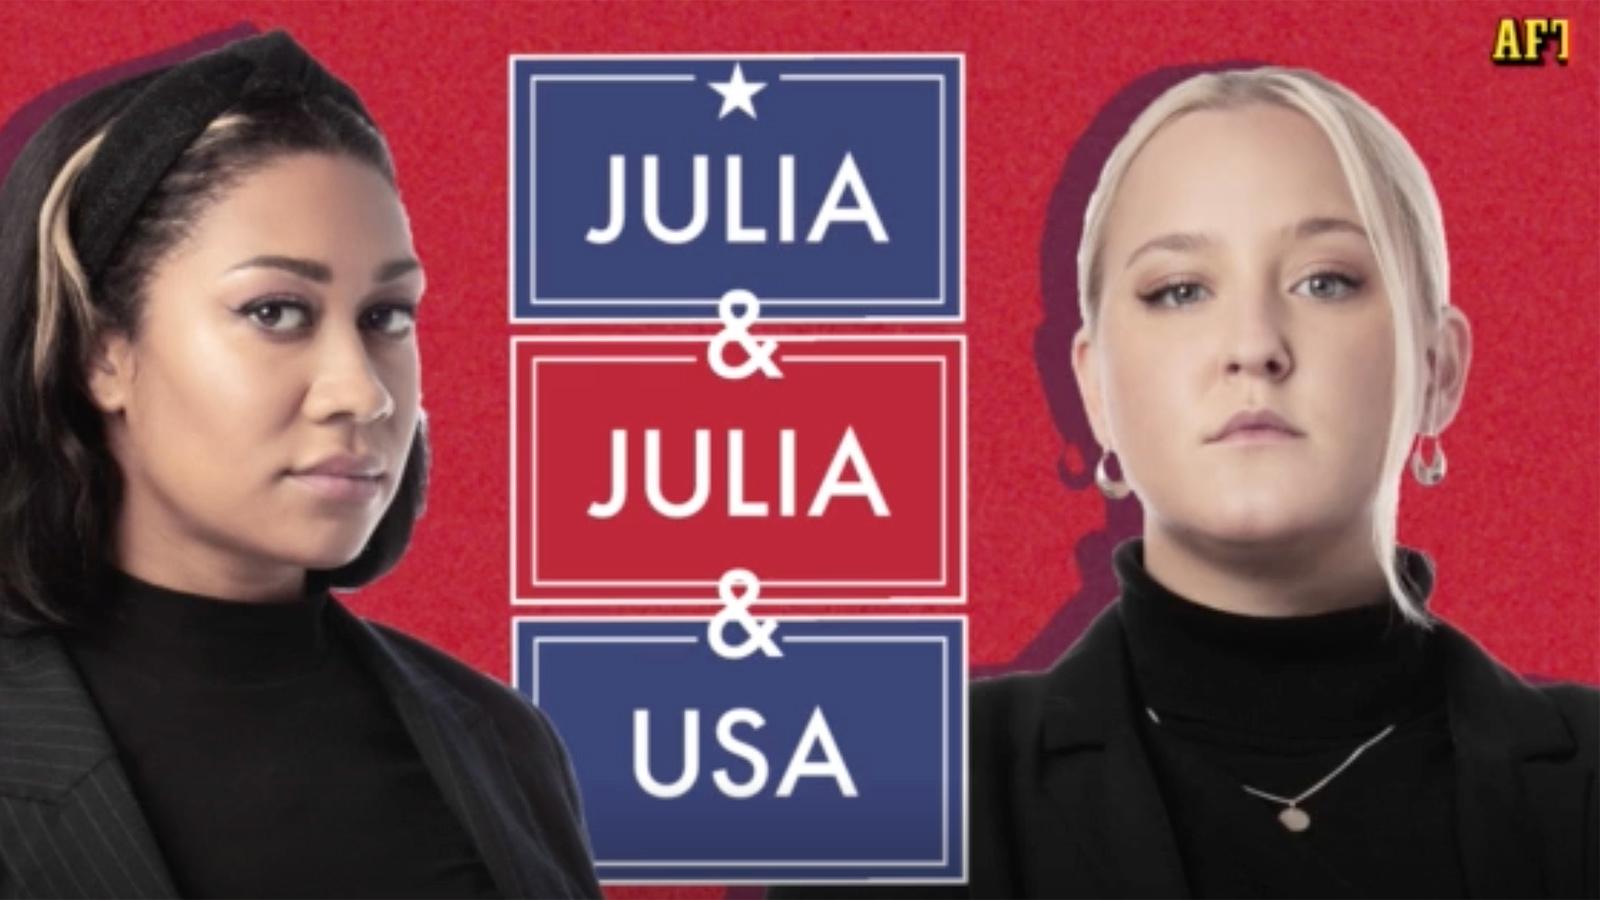 ”Julia & Julia & USA” har premiär på på Aftonbladet onsdag 14 oktober.